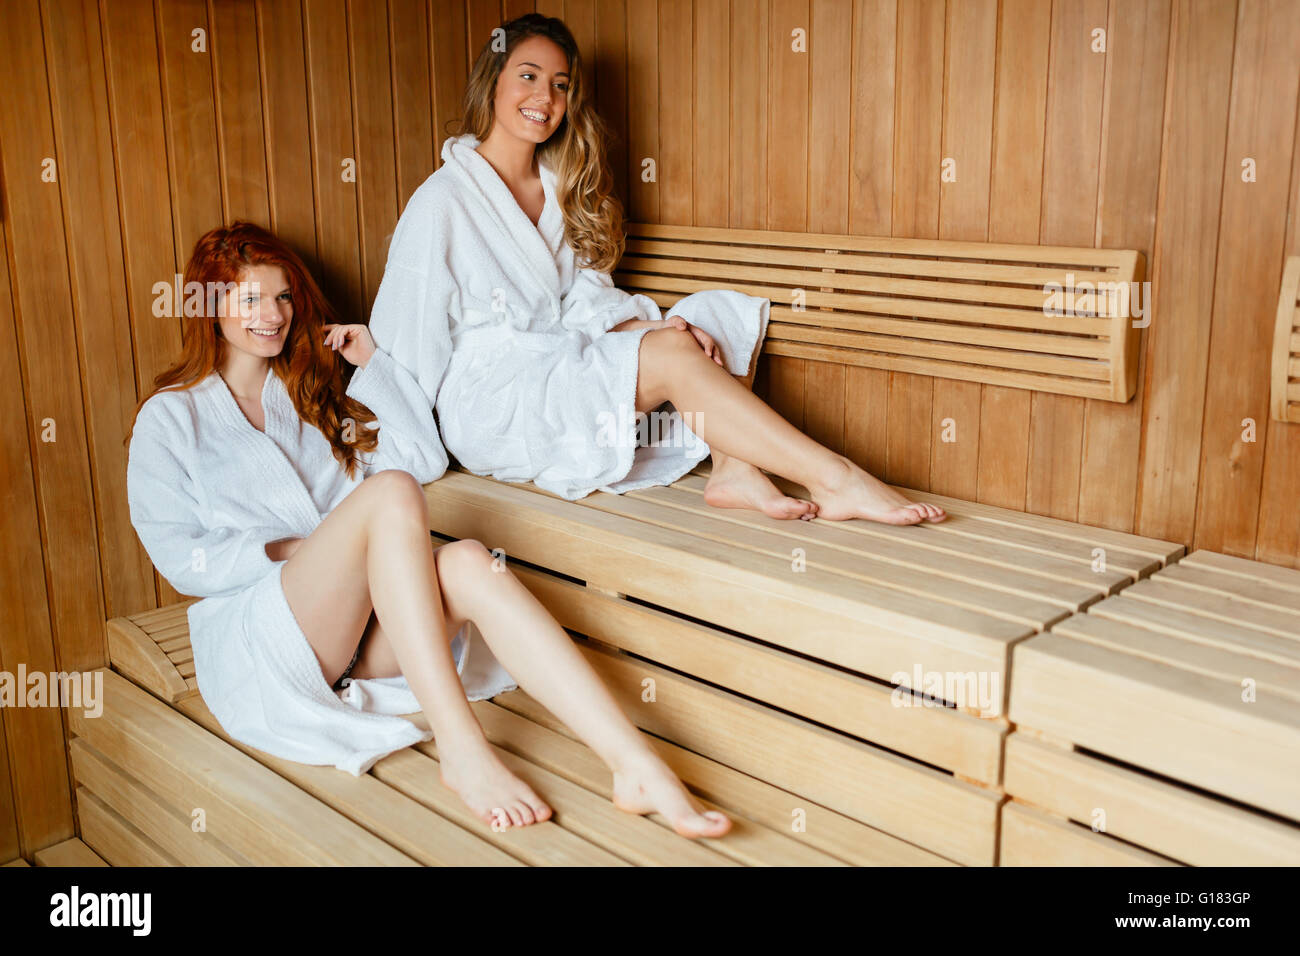 Beautiful women enjoying sauna treatment in bathrobes Stock Photo